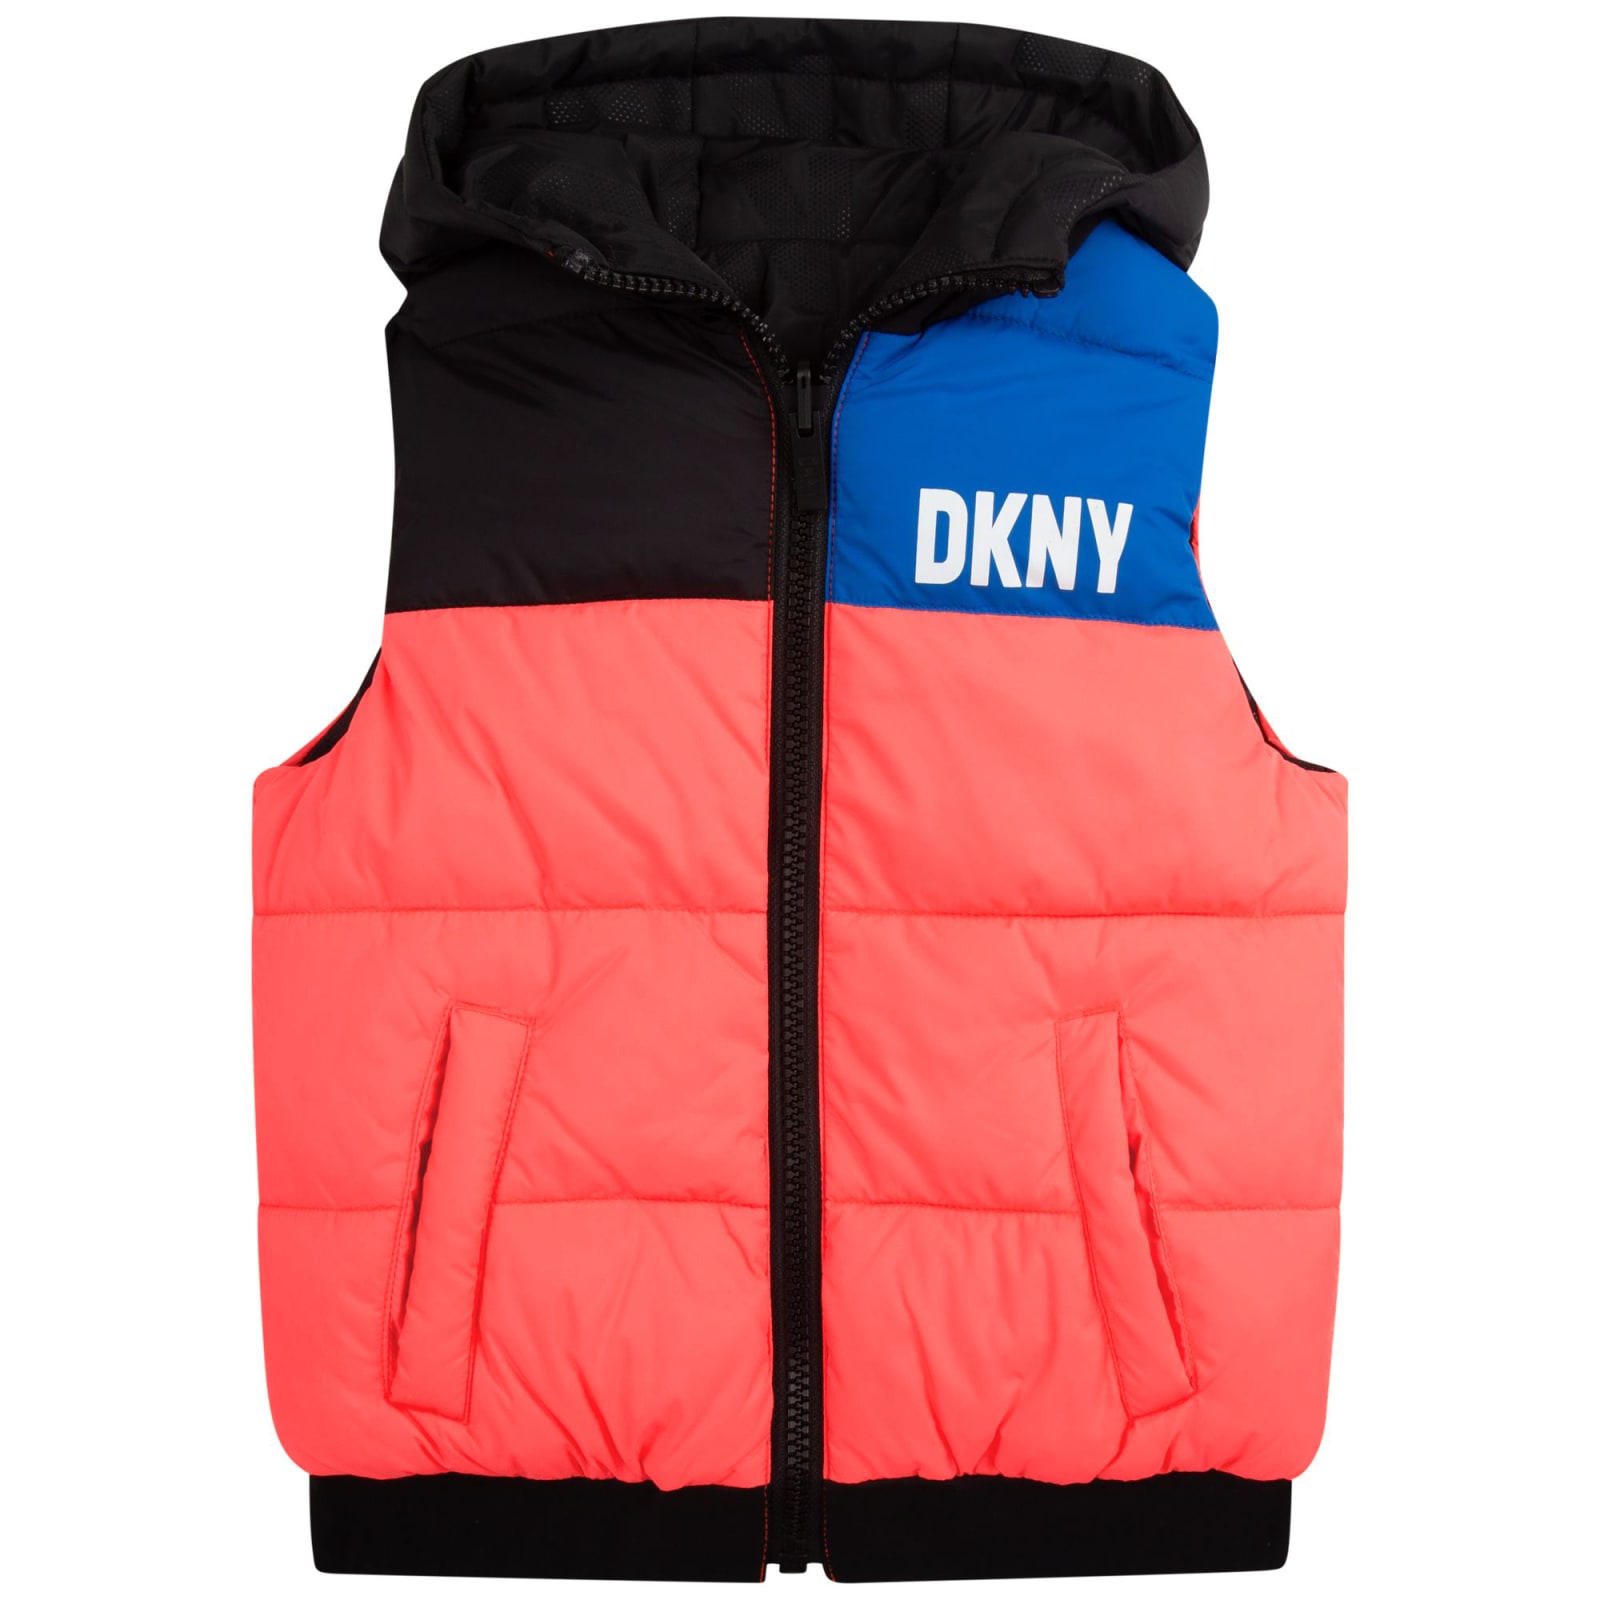 DKNY Reversible Jacket